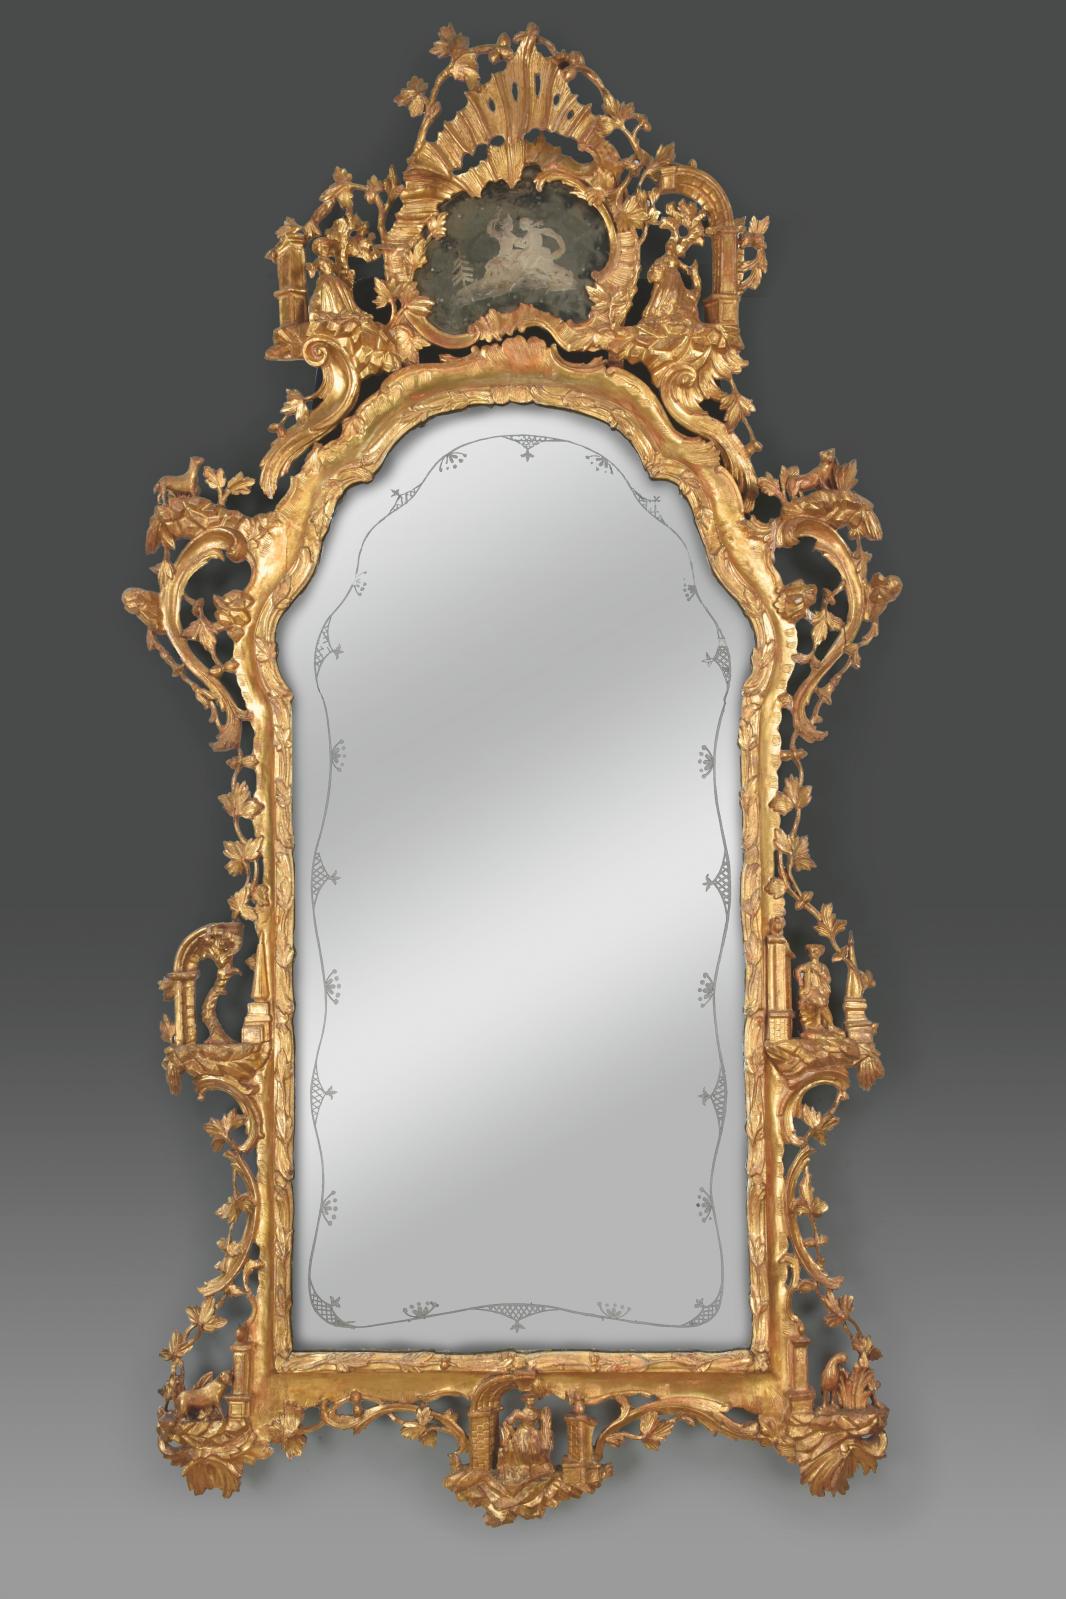 Italie, Venise, milieu du XVIIIe siècle. paire de grands miroirs en bois doré, h. 250, l. 135 cm environ (un reproduit). Estimation : 30 0